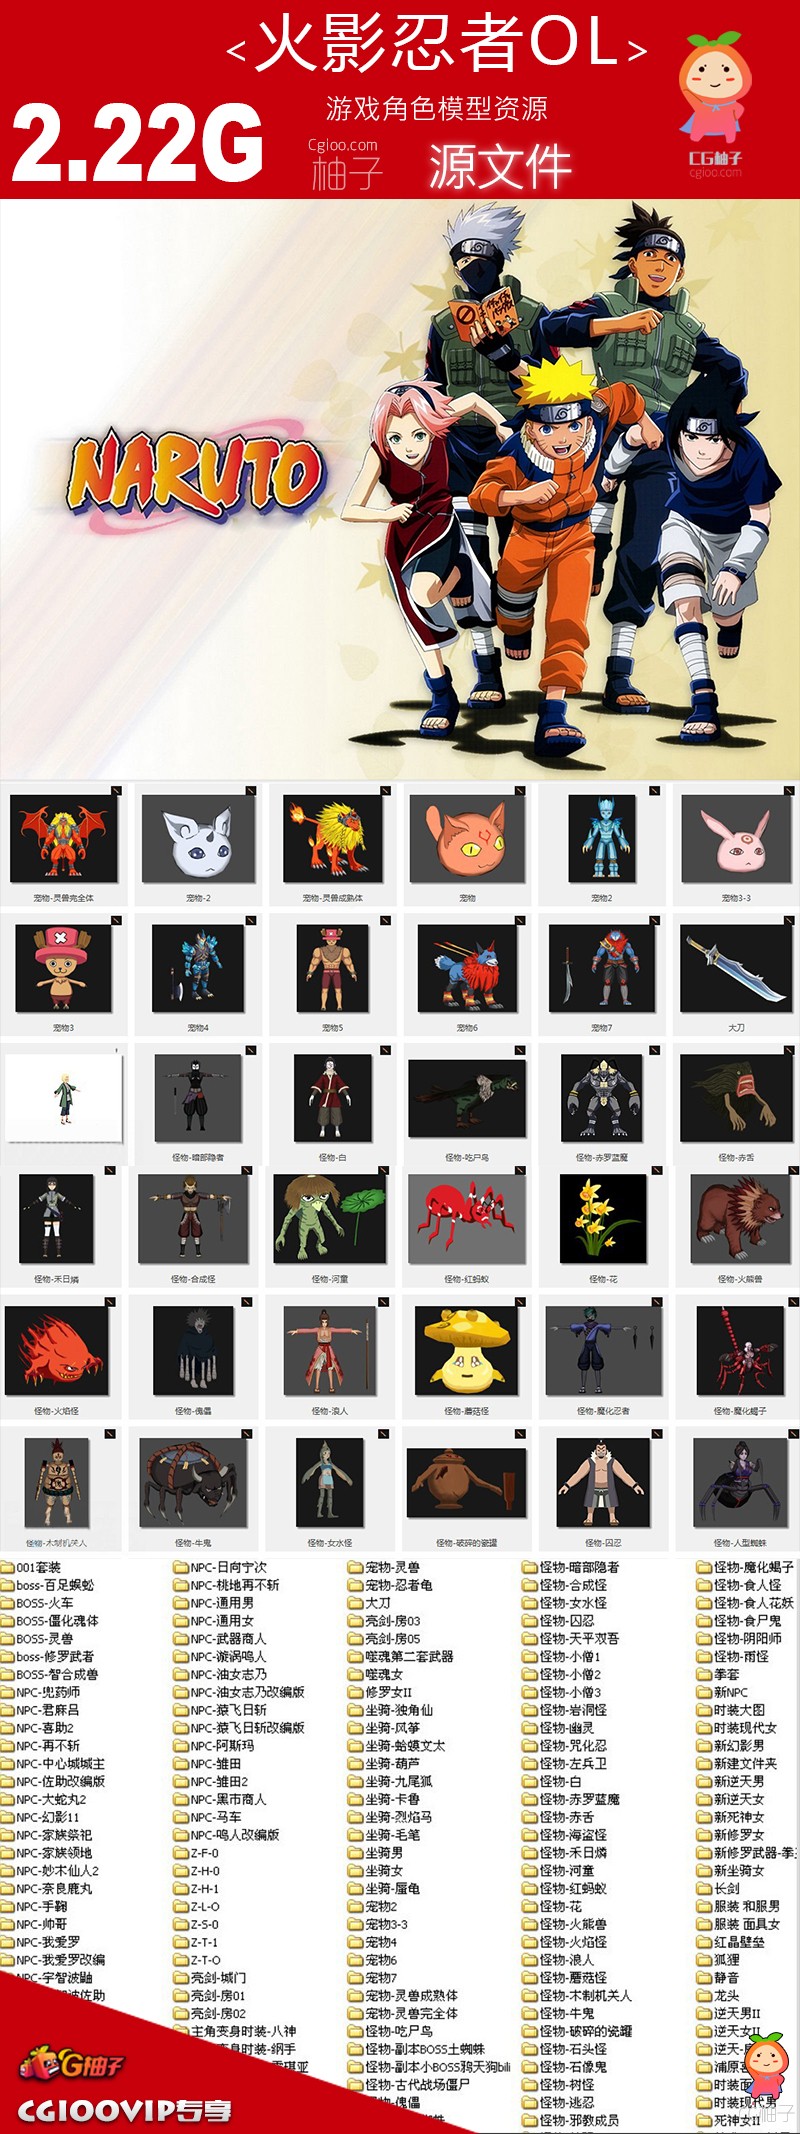 《火影忍者OL》游戏角色模型合集下载【2.2GB】